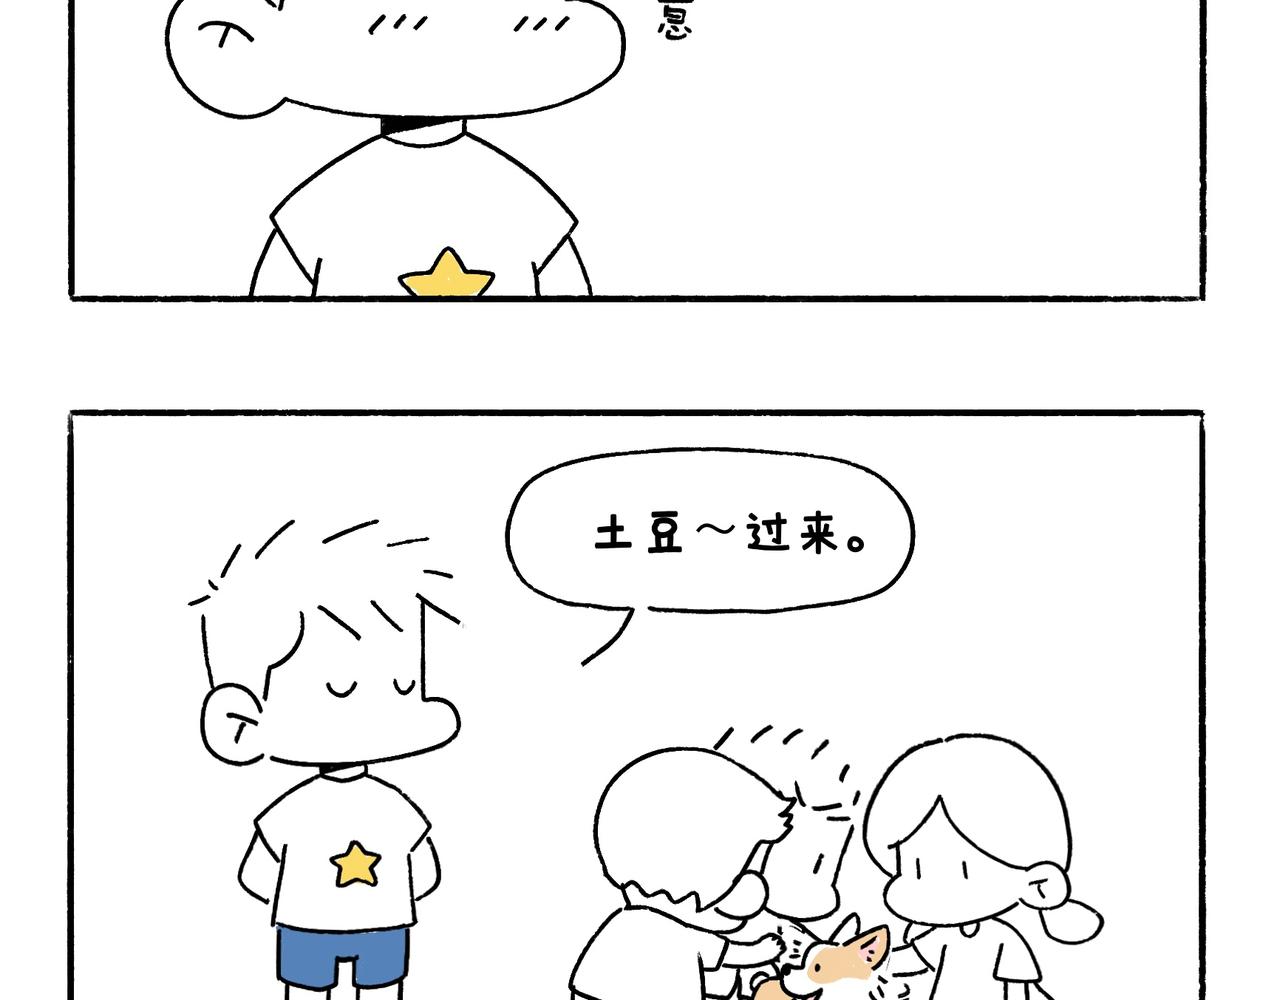 地呱炒土豆 - 回鄉偶記 - 4